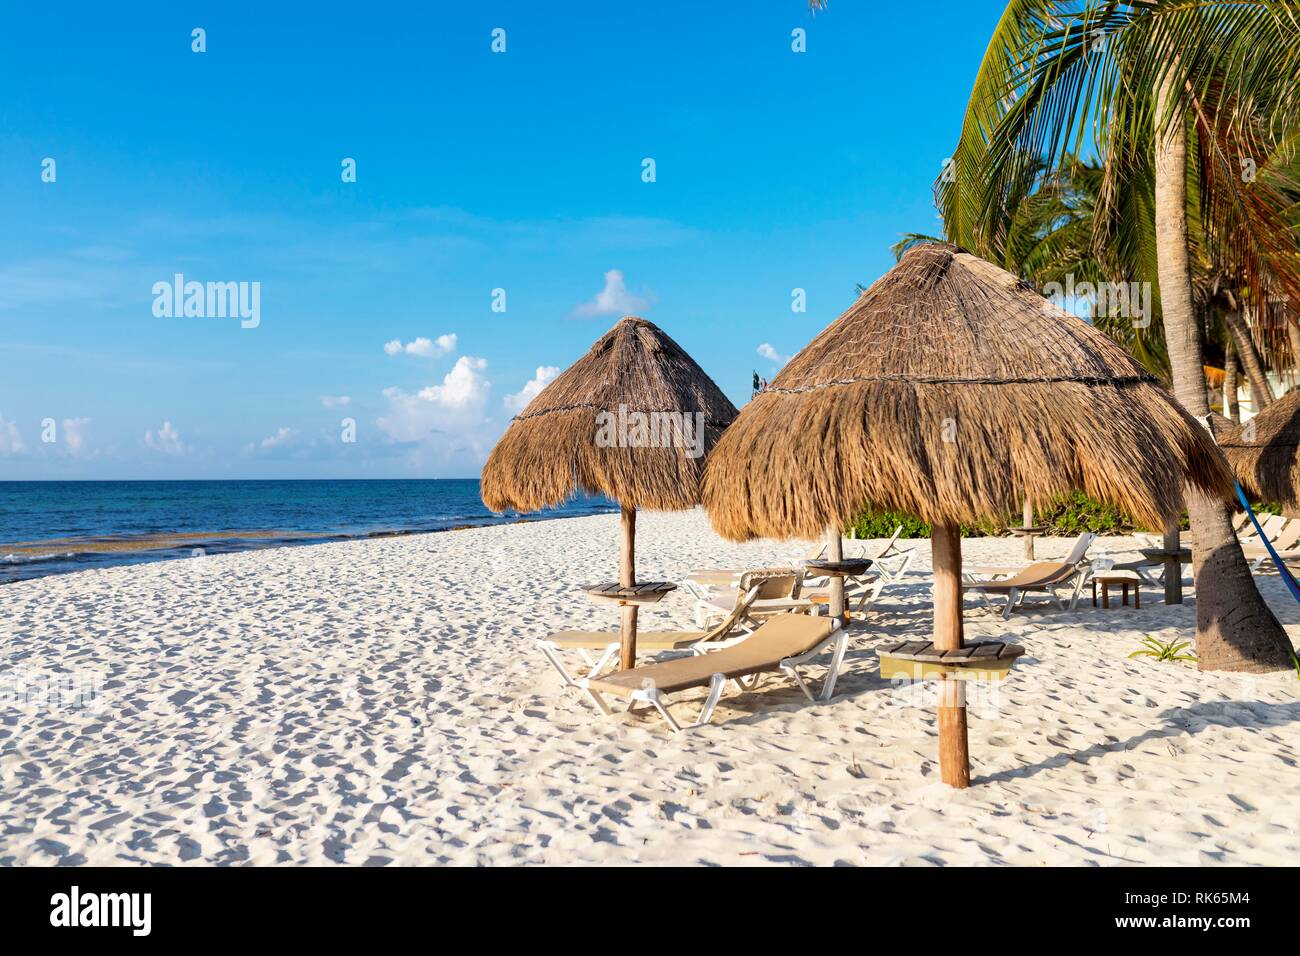 Chaises longues ou chaise longe chaises longues sous des parasols en chaume un luxe plage tropicale avec palmiers le long de la côte des Caraïbes de la sta Banque D'Images